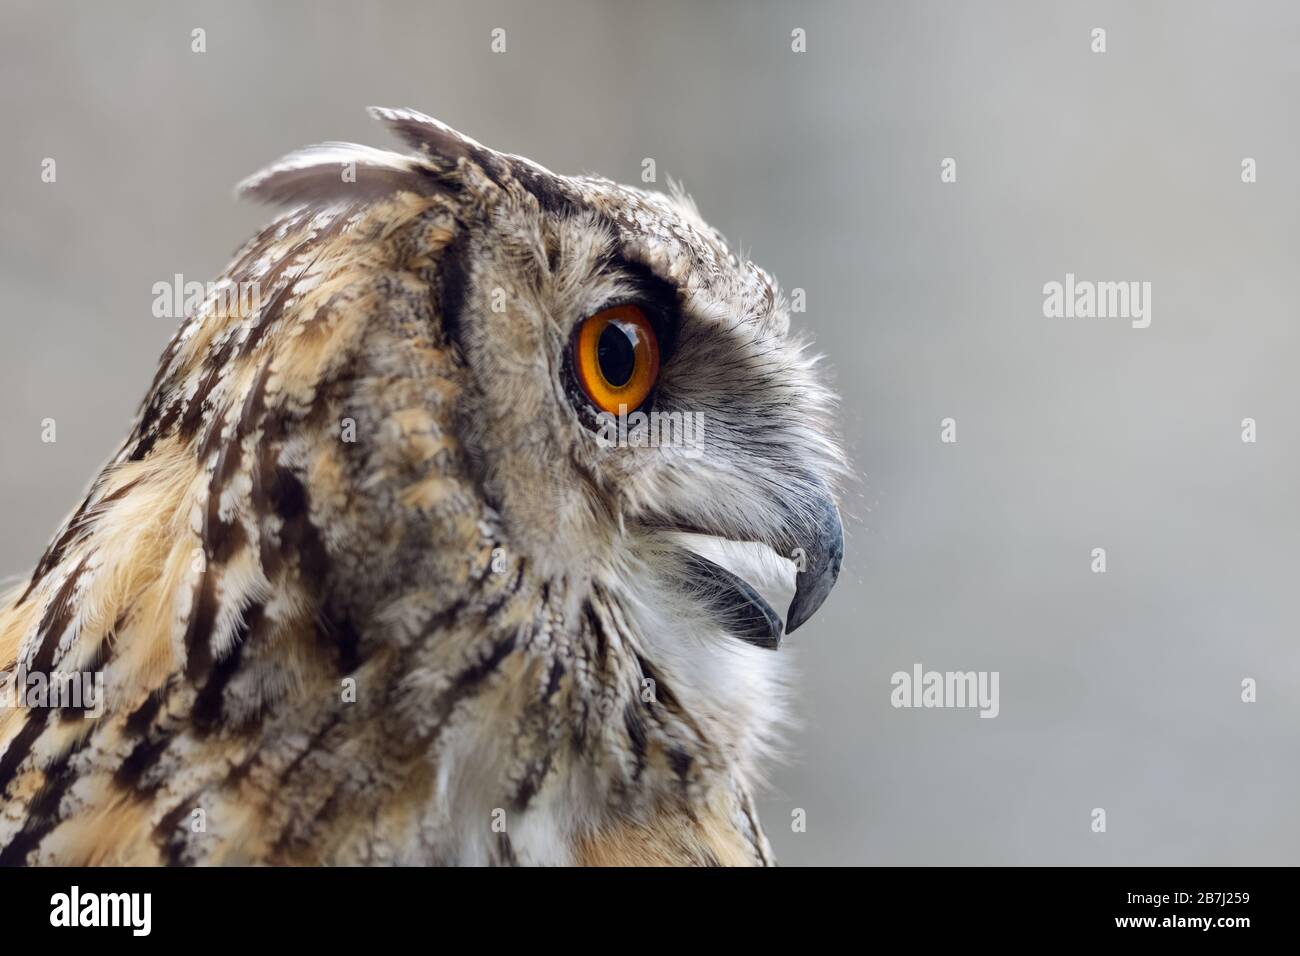 Eagle Owl ( Bubo bubo ), eurasien Eagle-Owl, également appelé Northern Eagle Owl ou européen Eagle-Owl, adulte, appelant, vue latérale, Europe. Banque D'Images